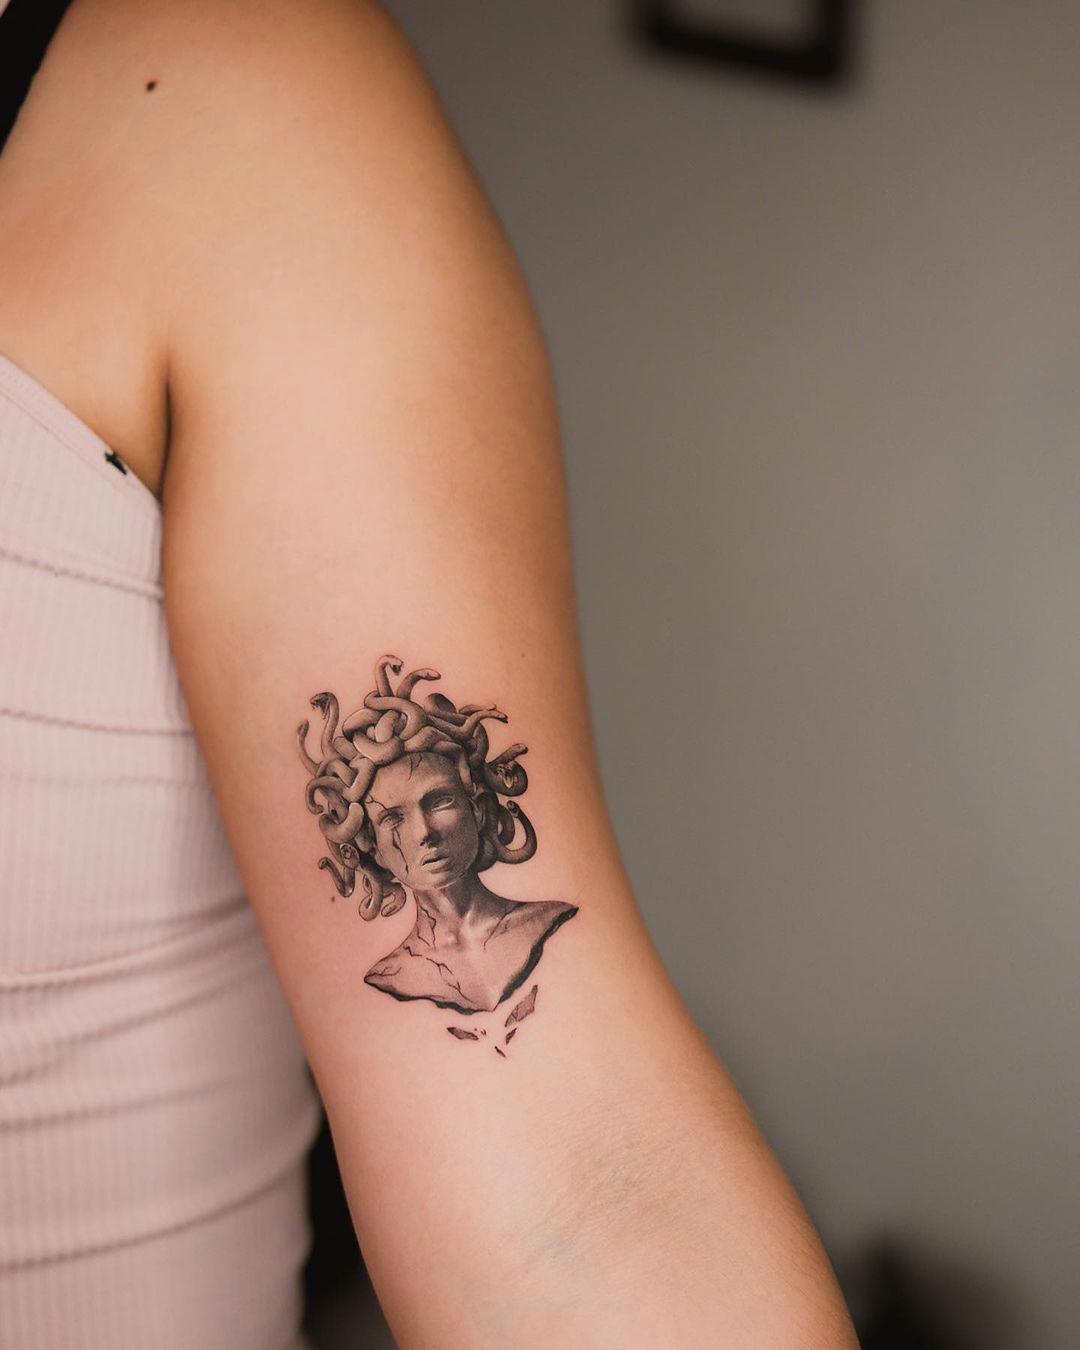 Tatuaje de Medusa